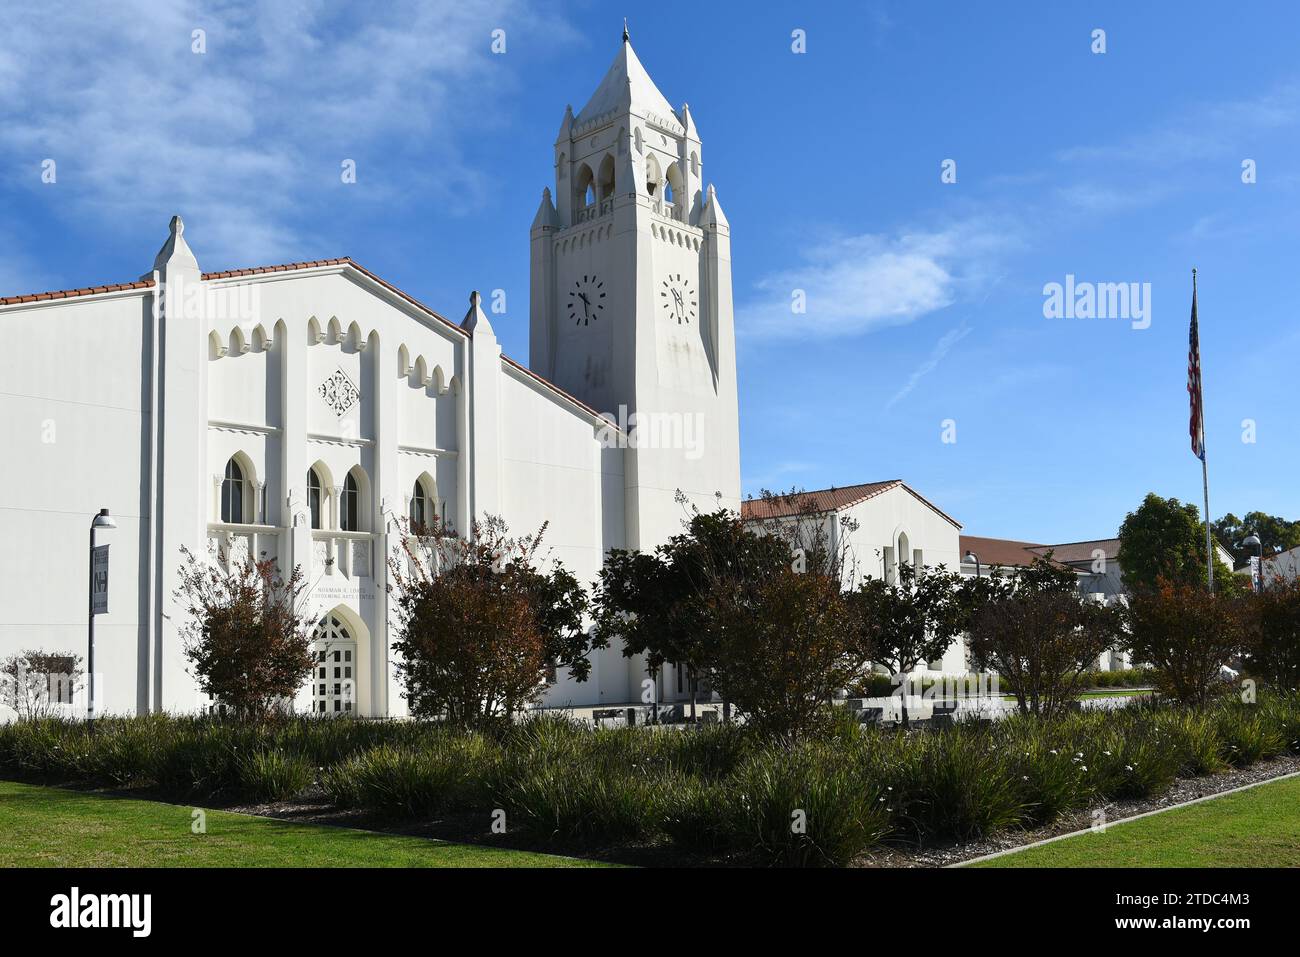 NEWPORT BEACH, KALIFORNIEN - 17. Dezember 2023: Das Robbins-Loats Performing Arts Gebäude und der Clock Tower auf dem Campus der Newport Harbor High School. Stockfoto